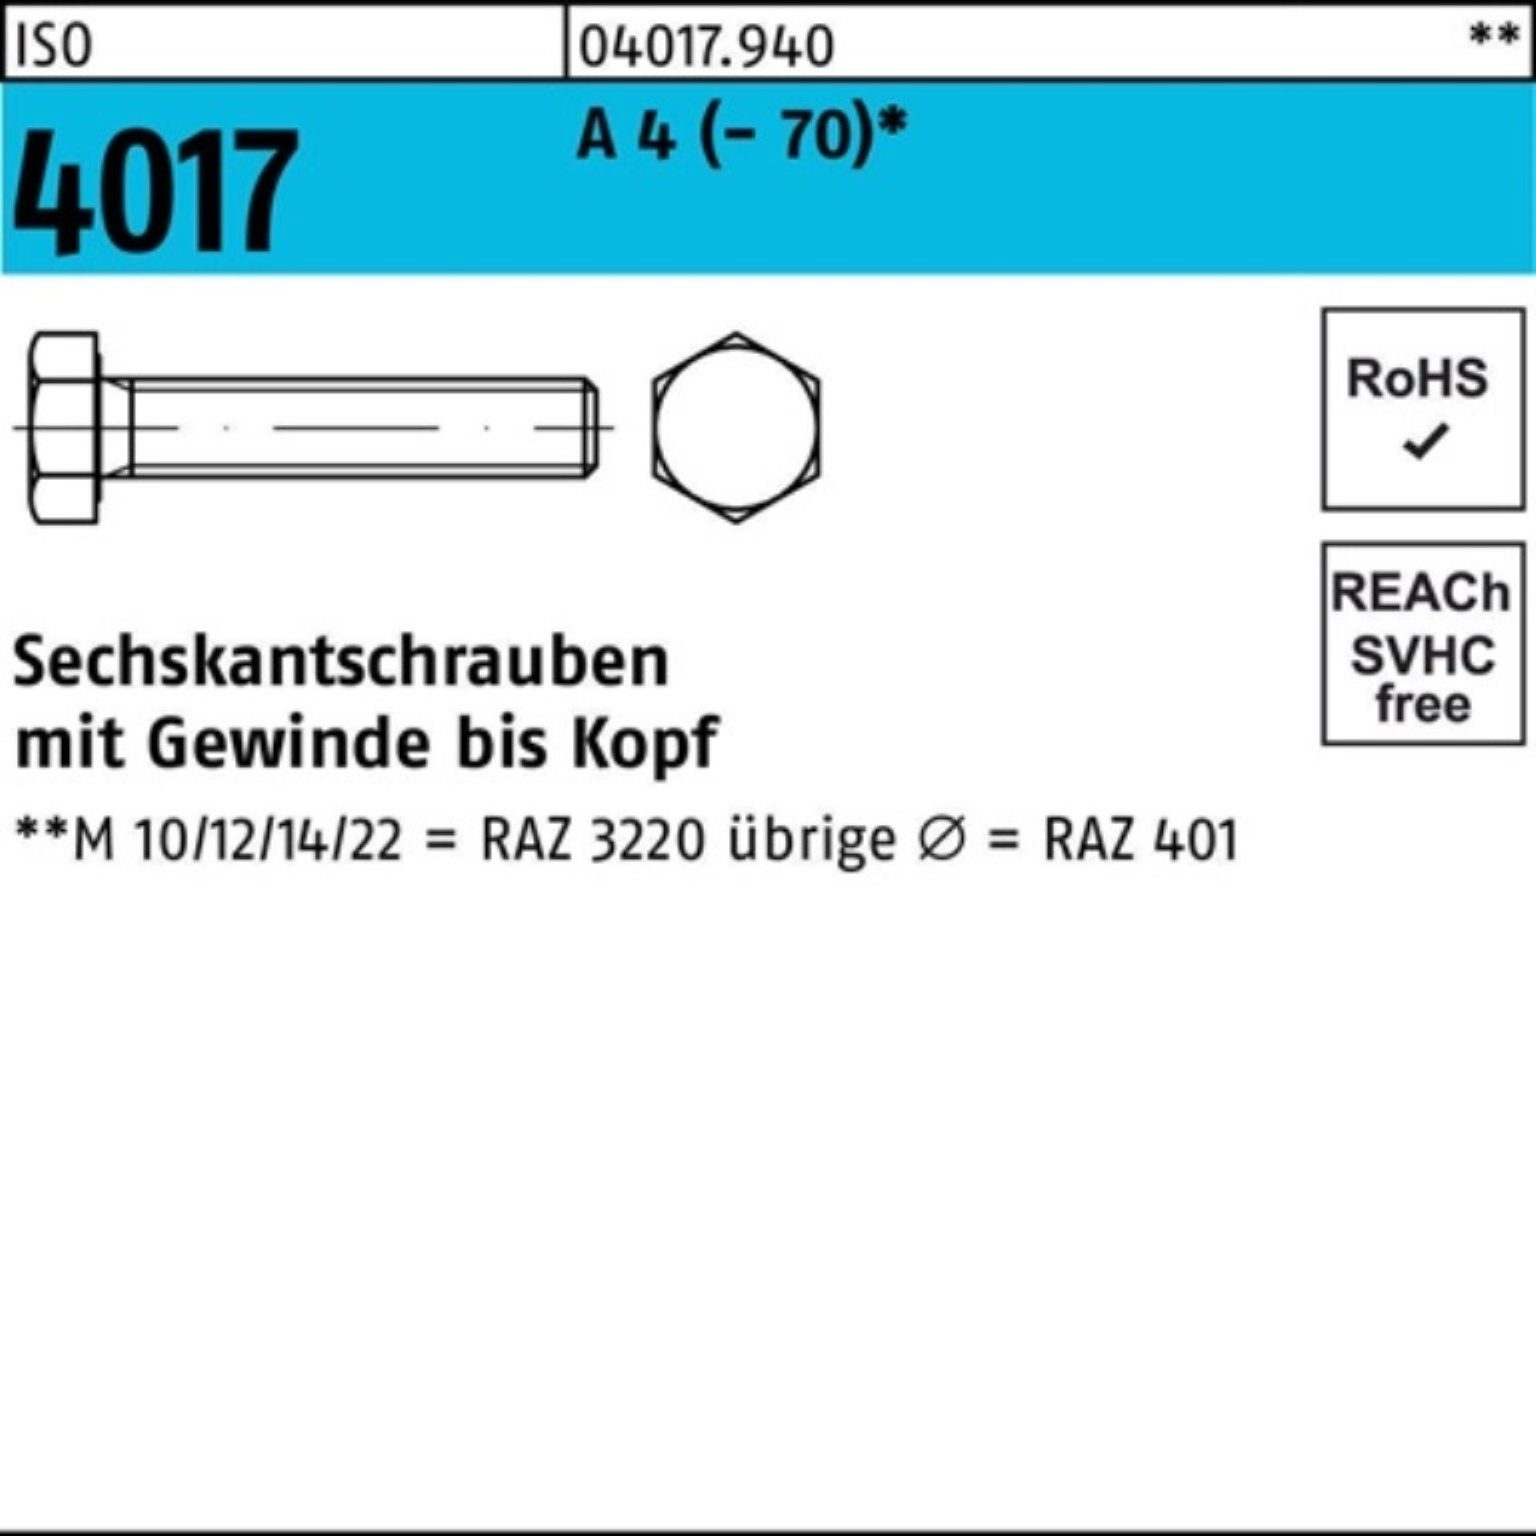 A (70) 1 35 Sechskantschraube M18x Sechskantschraube 100er Bufab 4 4017 ISO I Stück Pack VG